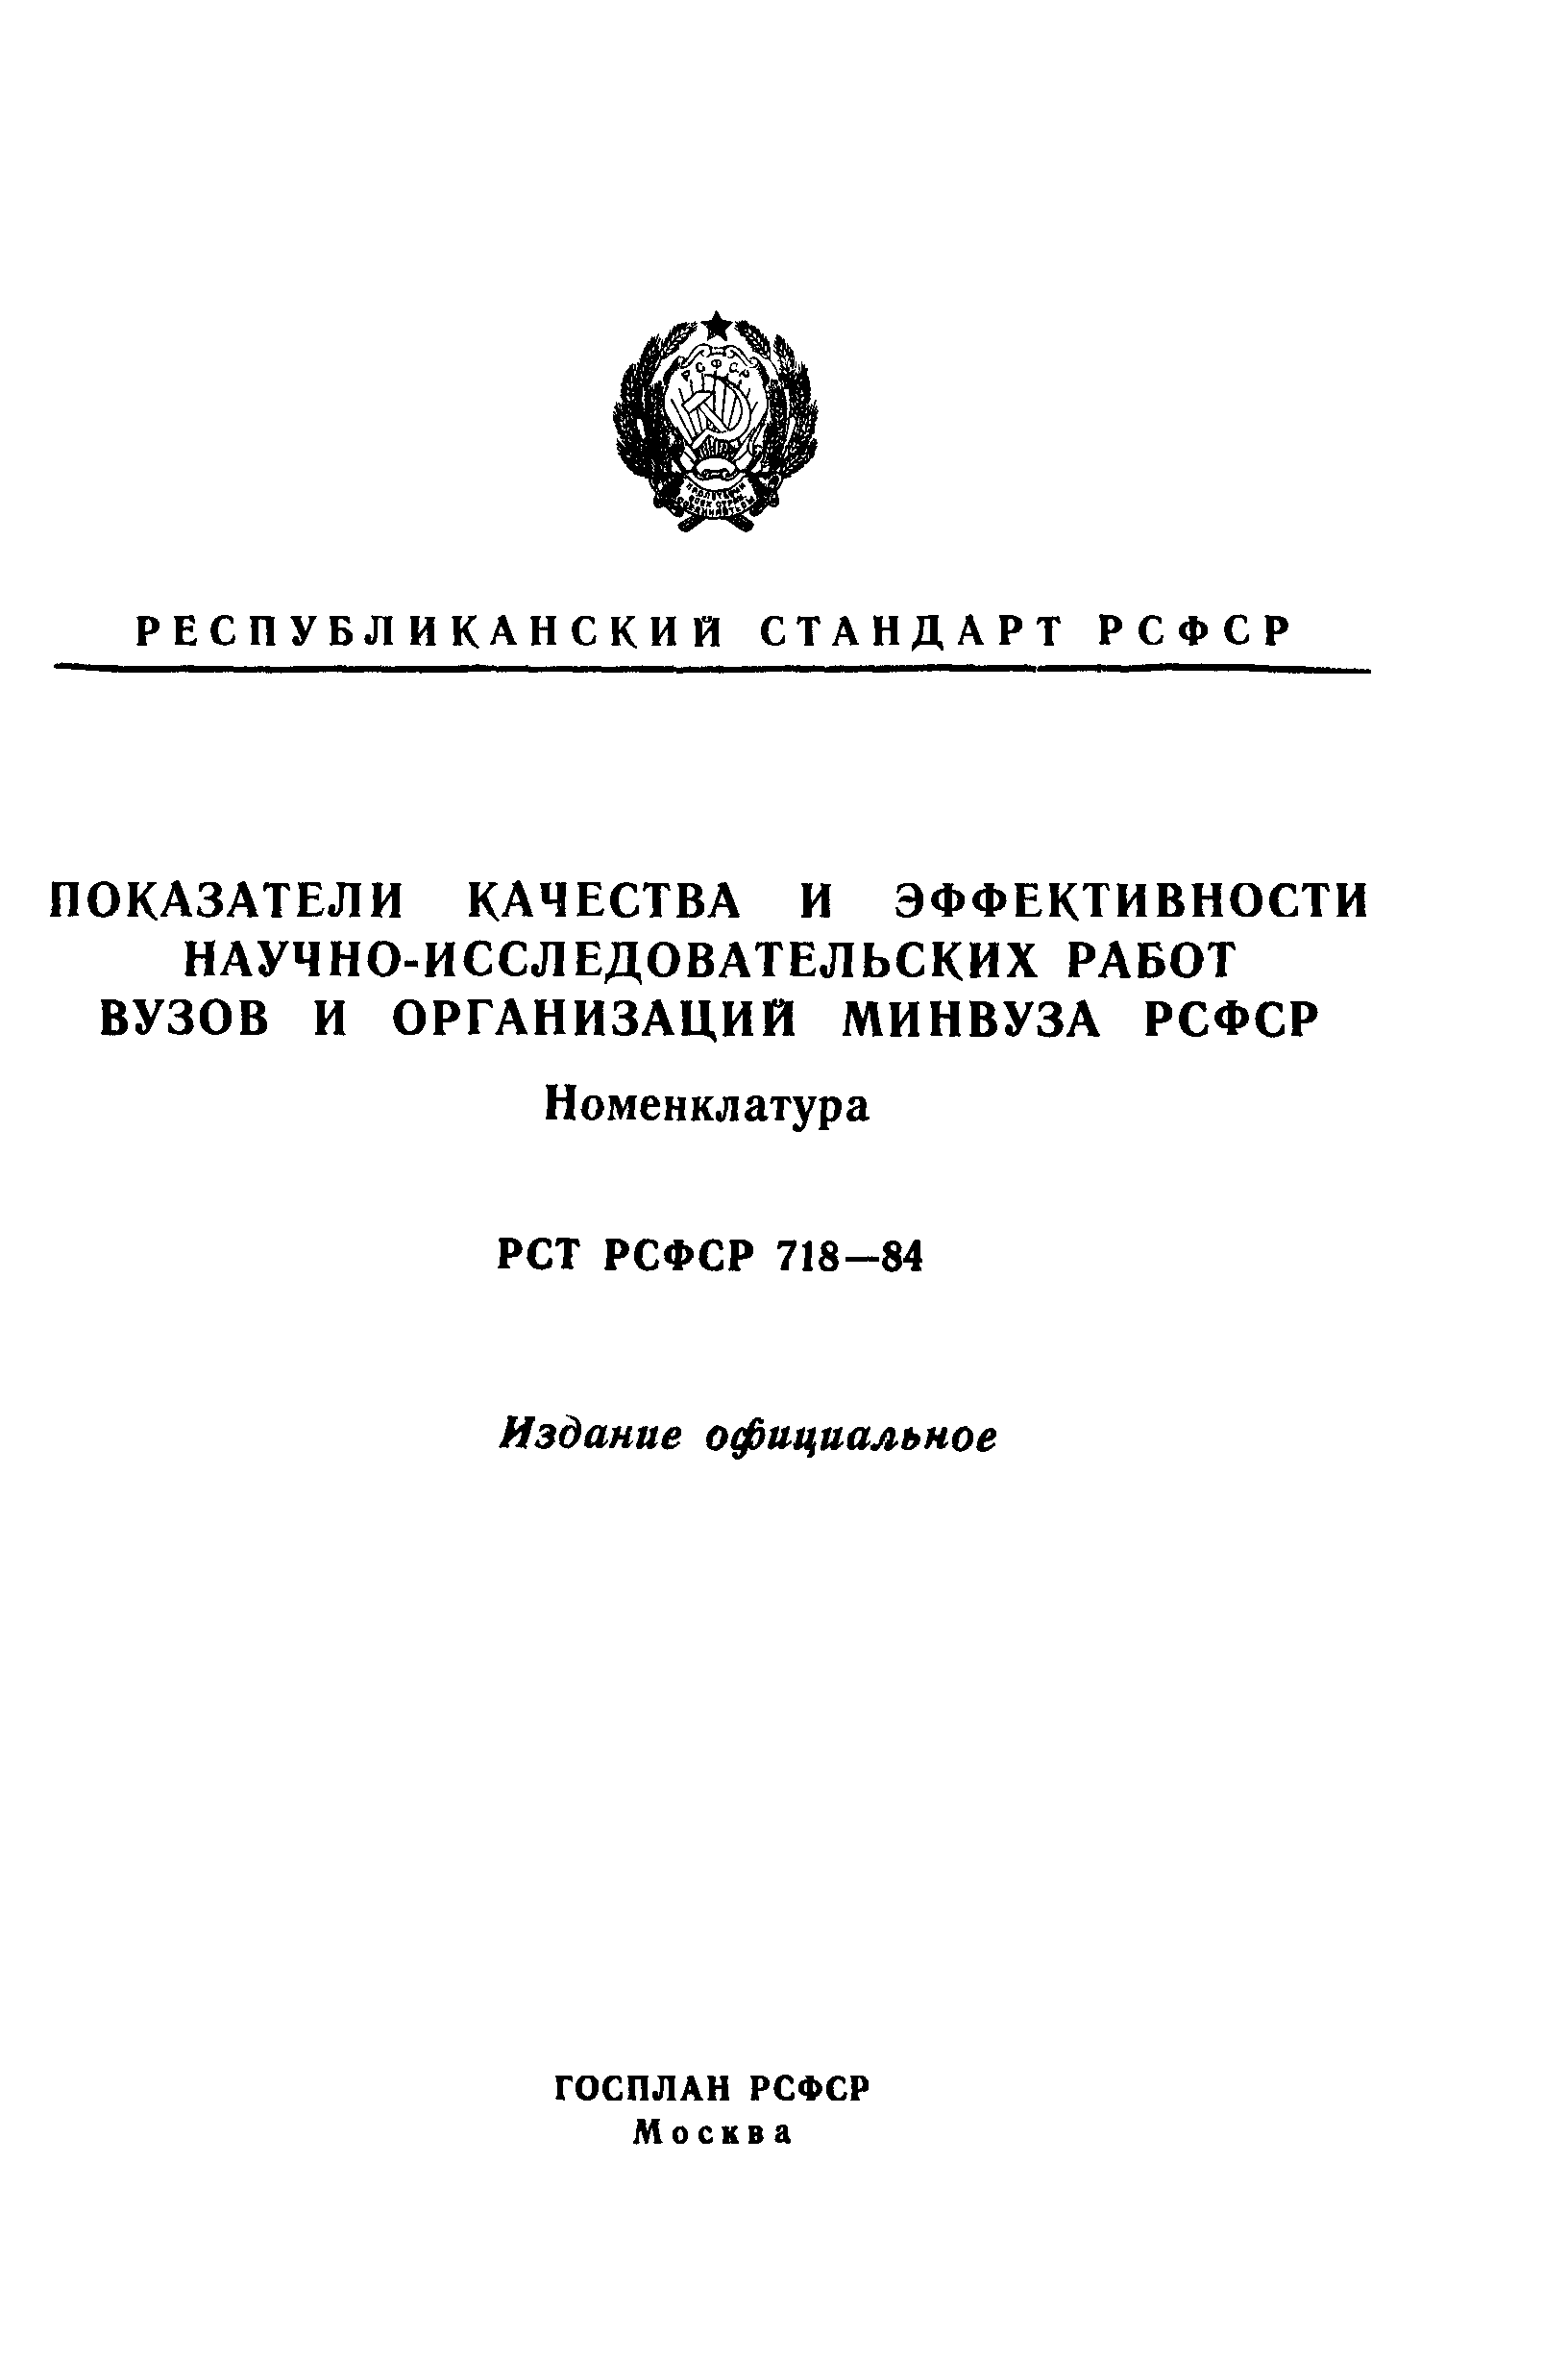 РСТ РСФСР 718-84